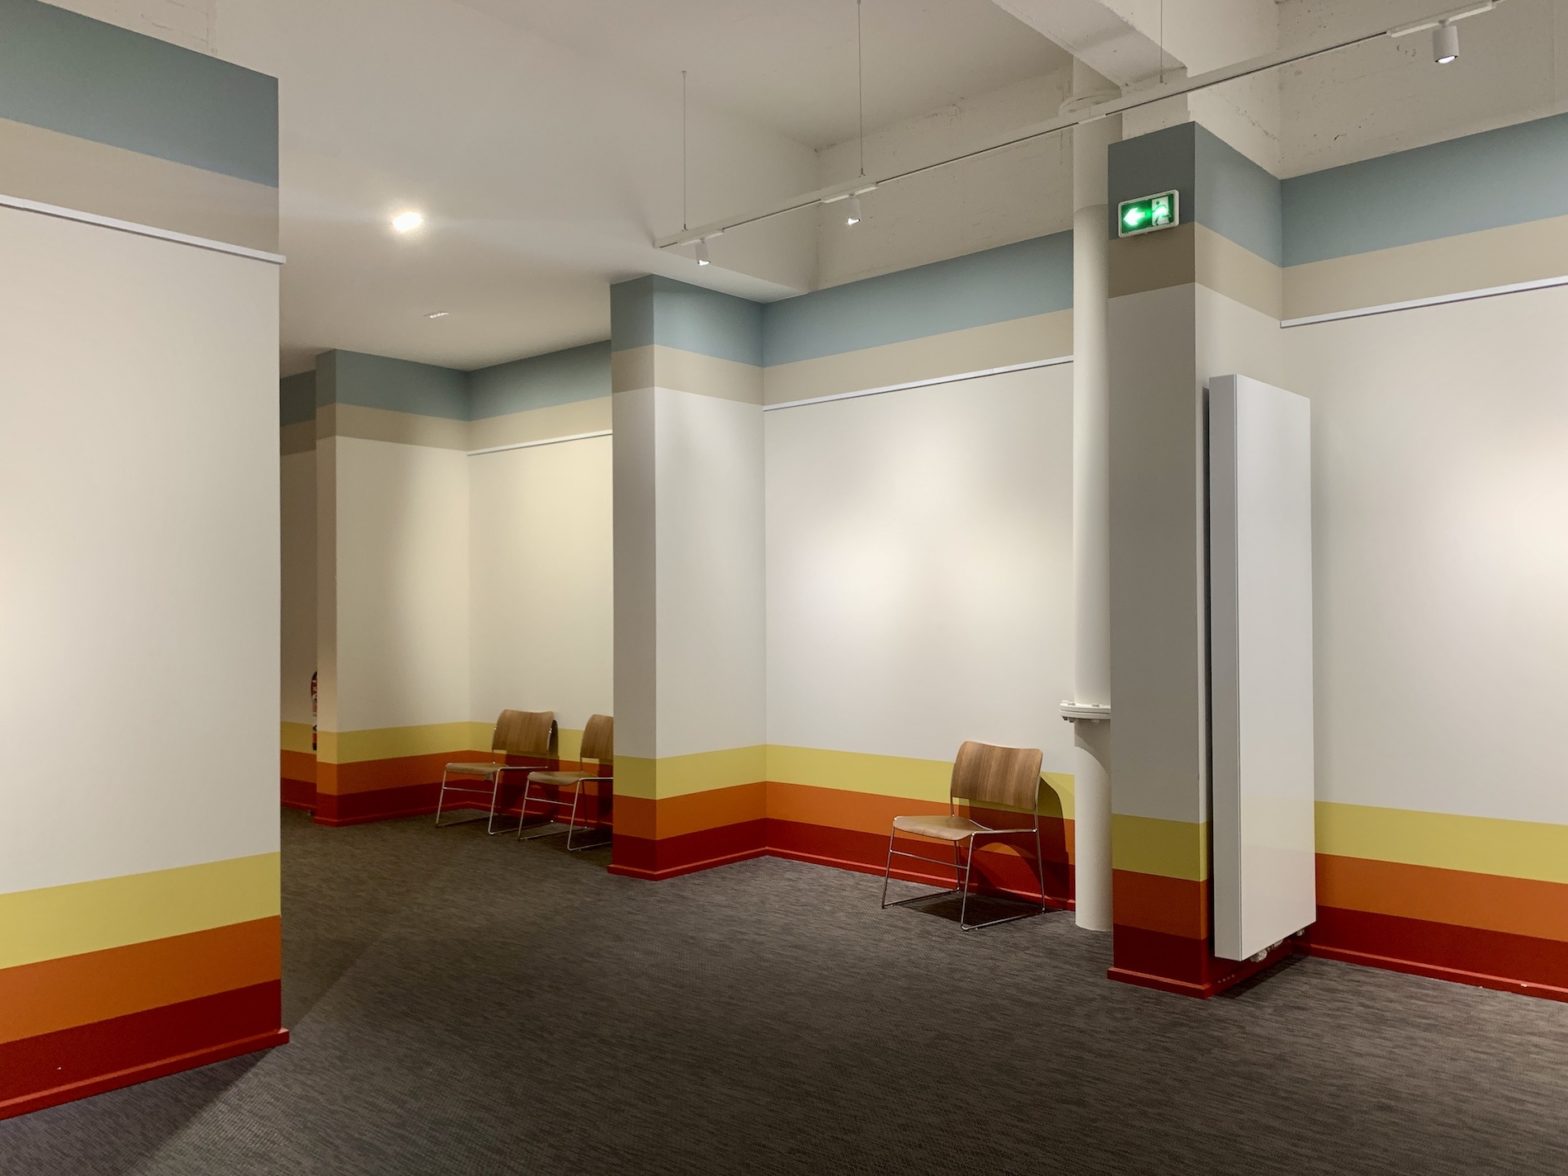 Photo d'un couloir d'un centre de conférence avec des rayures très graphique aux murs, bleus en haut et orangé en bas.